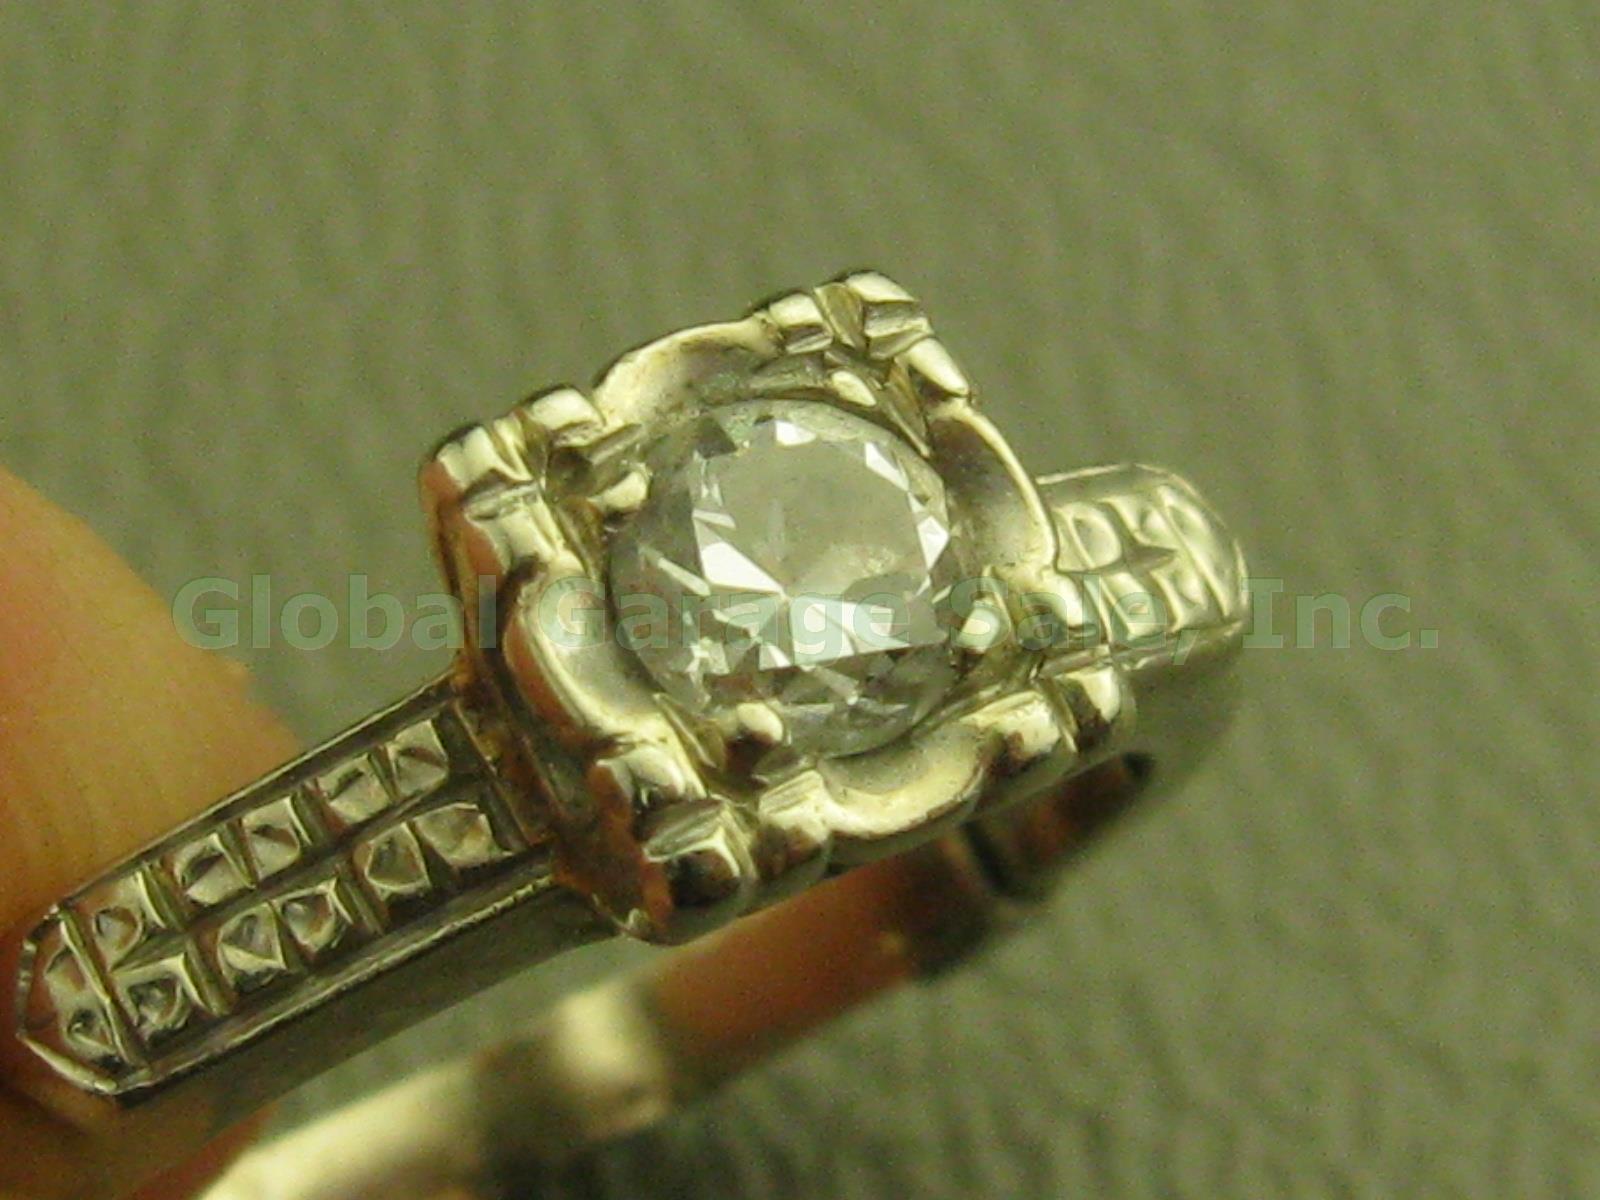 Vtg 14k White Gold Diamond Solitaire Engagement Ring Band W/Insert 4.25-4.5 2.9g